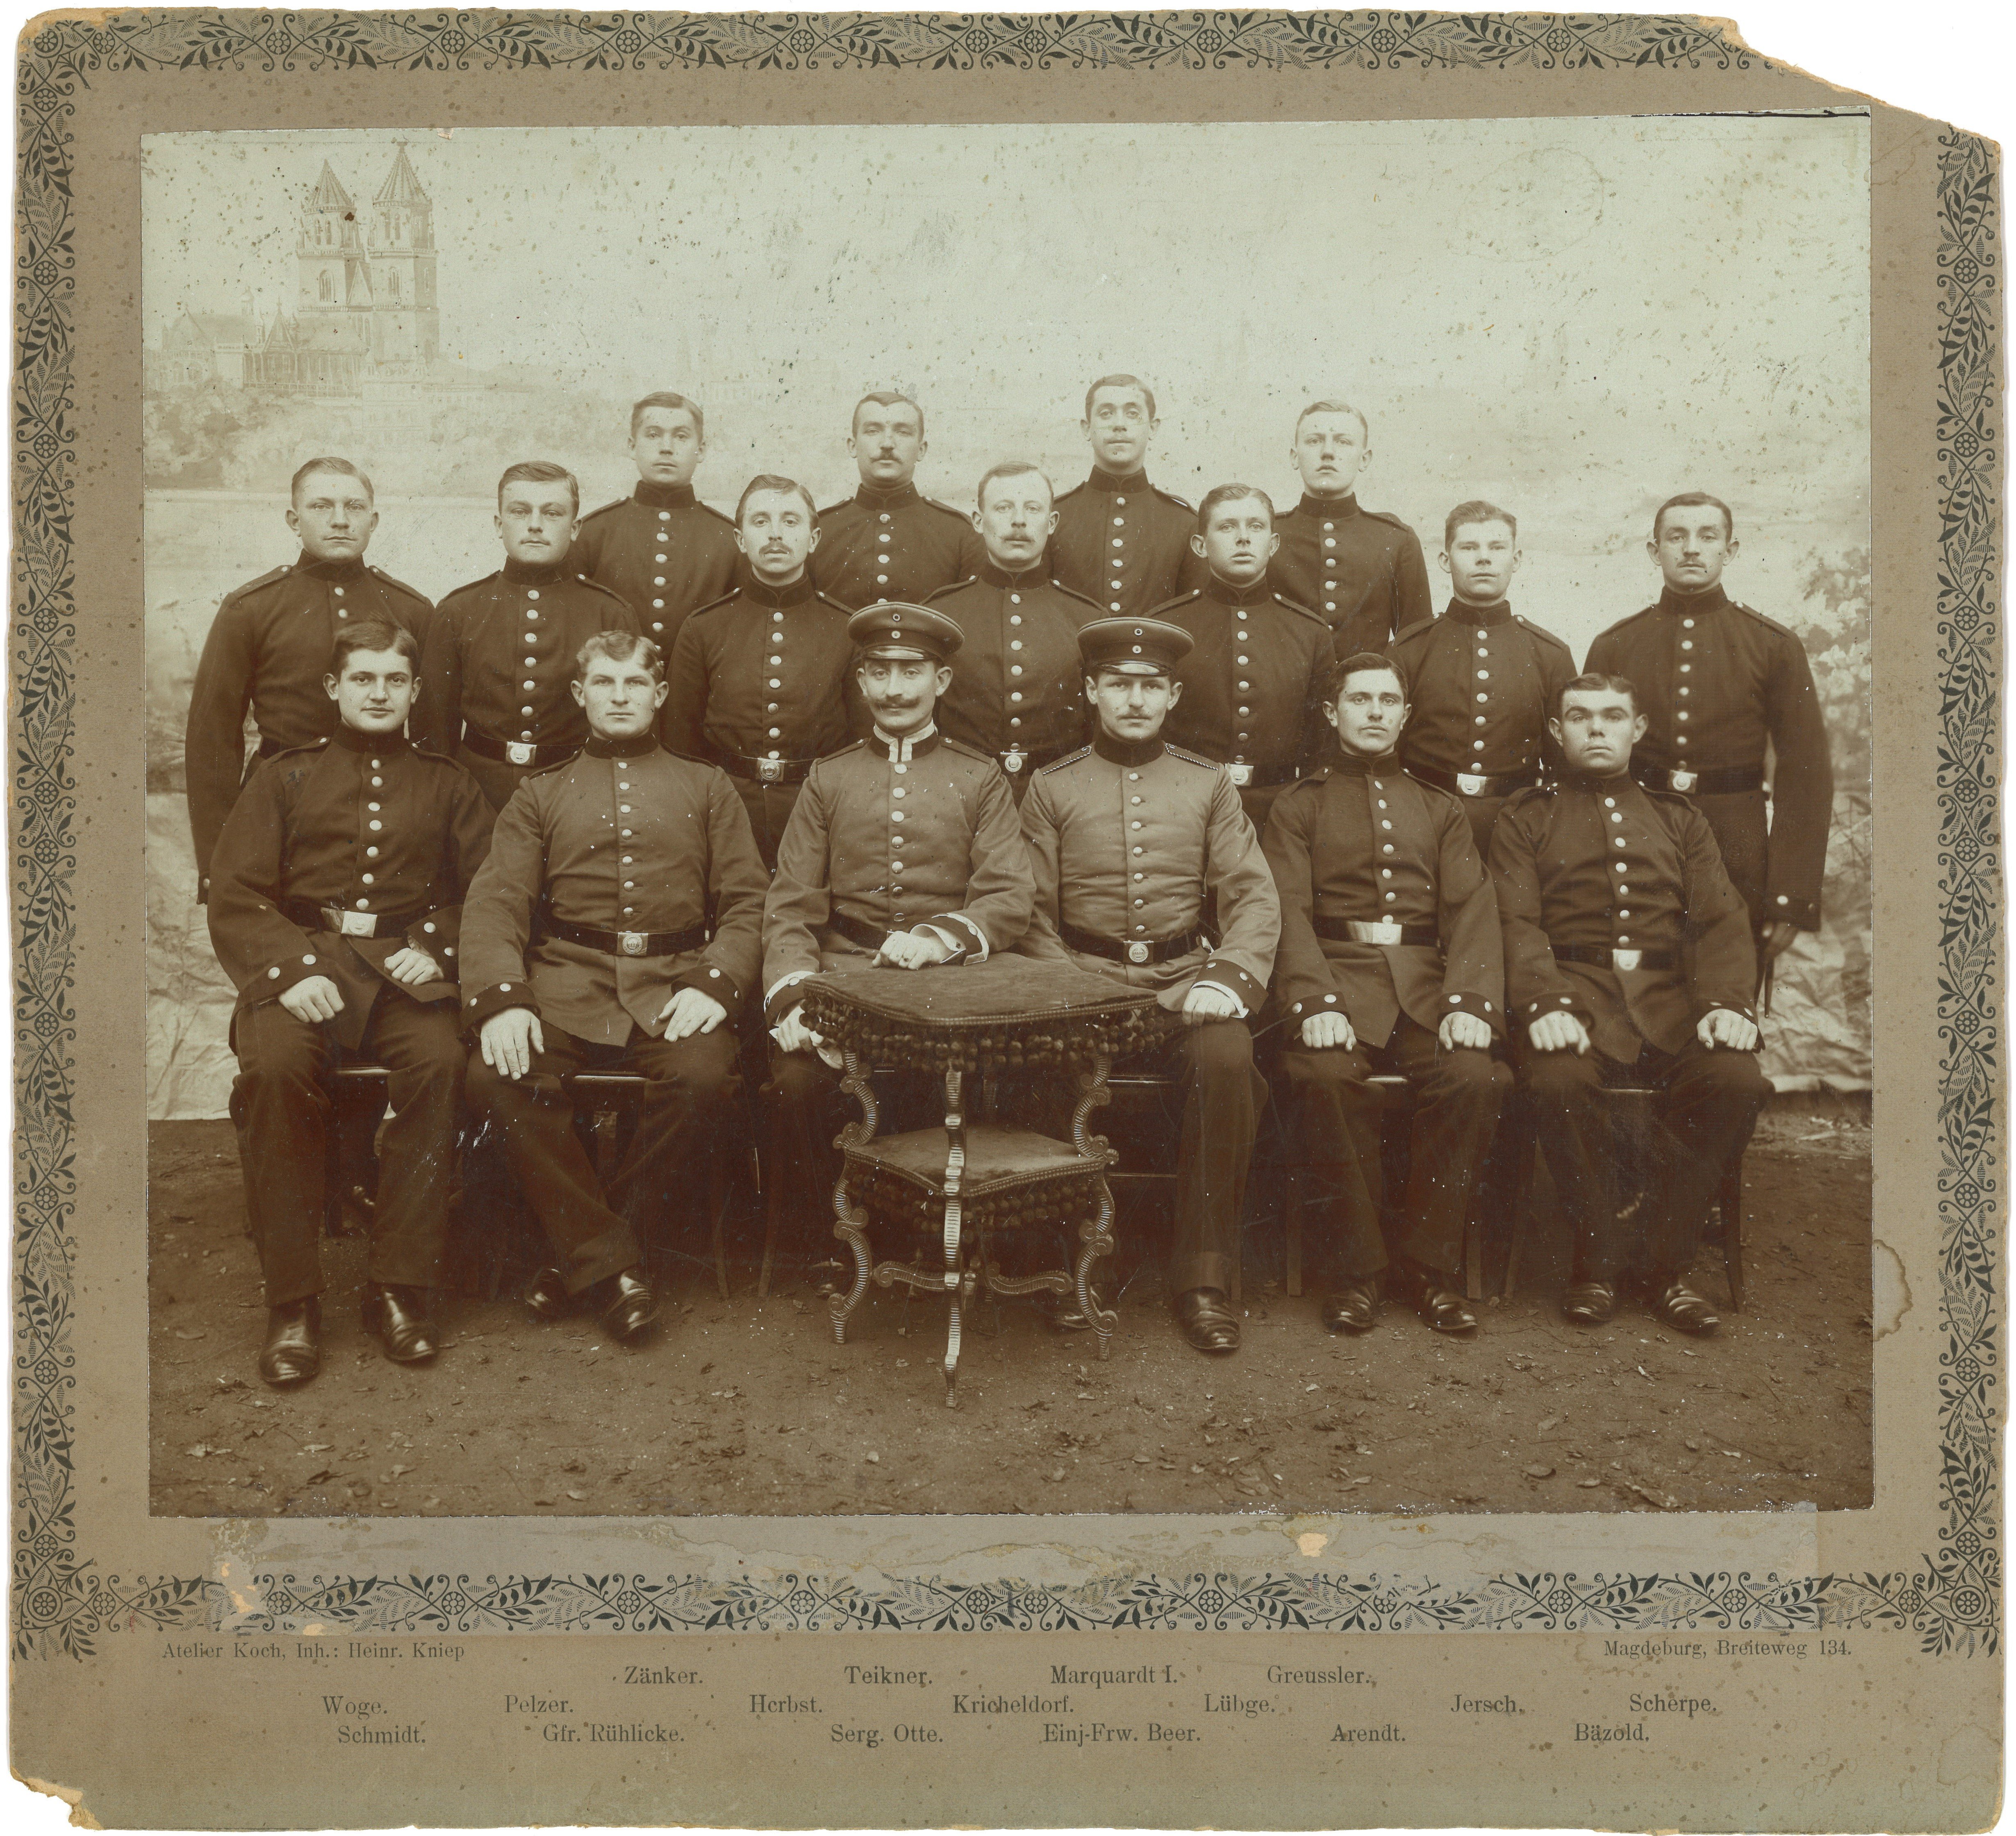 Magdeburg: Gruppenbild von Soldaten des Feldartillerie-Regiments Nr. 4 (um 1900) (Landesgeschichtliche Vereinigung für die Mark Brandenburg e.V., Archiv CC BY)